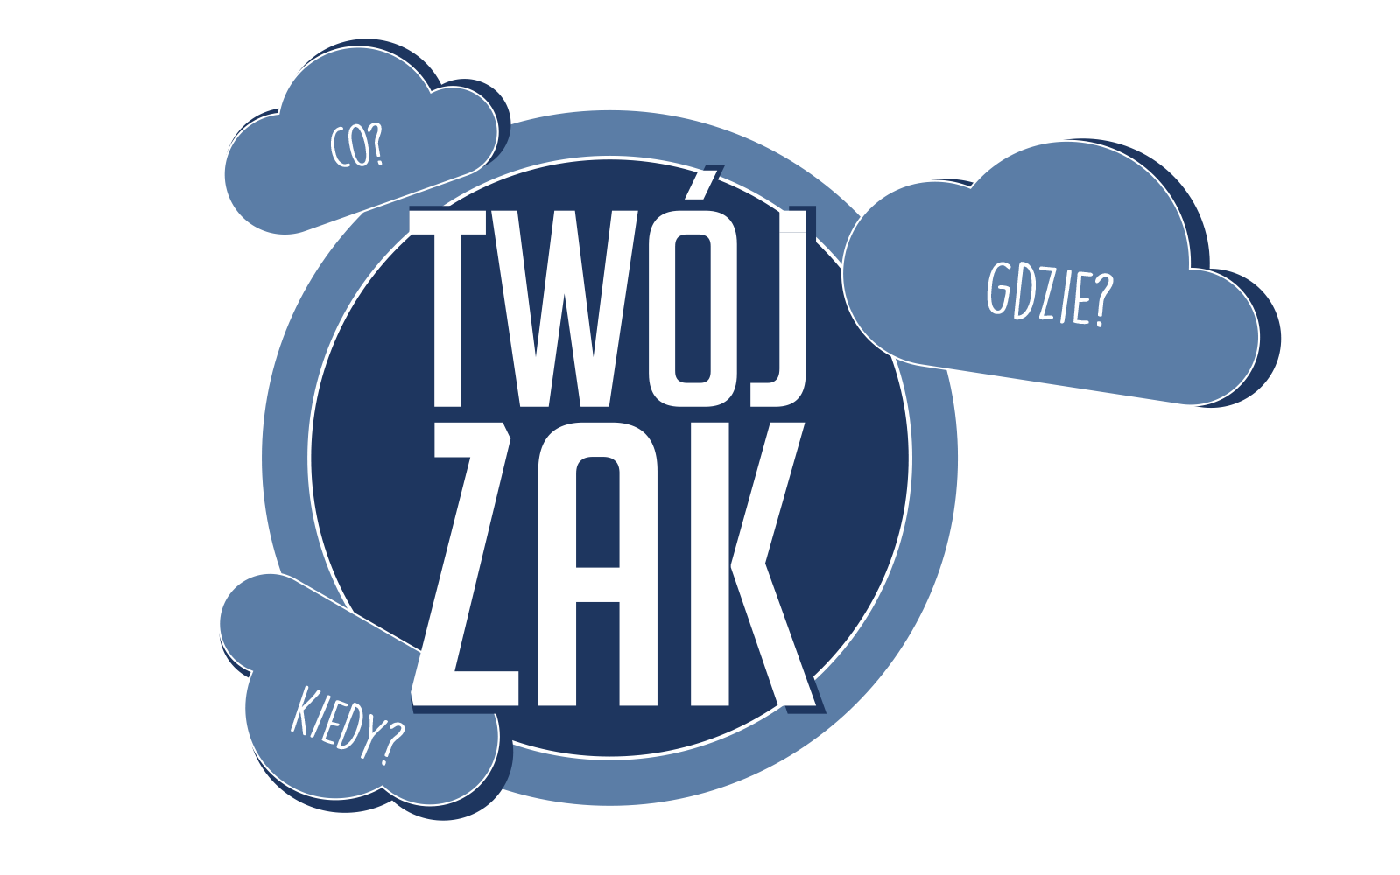 Grupa Azoty - logo